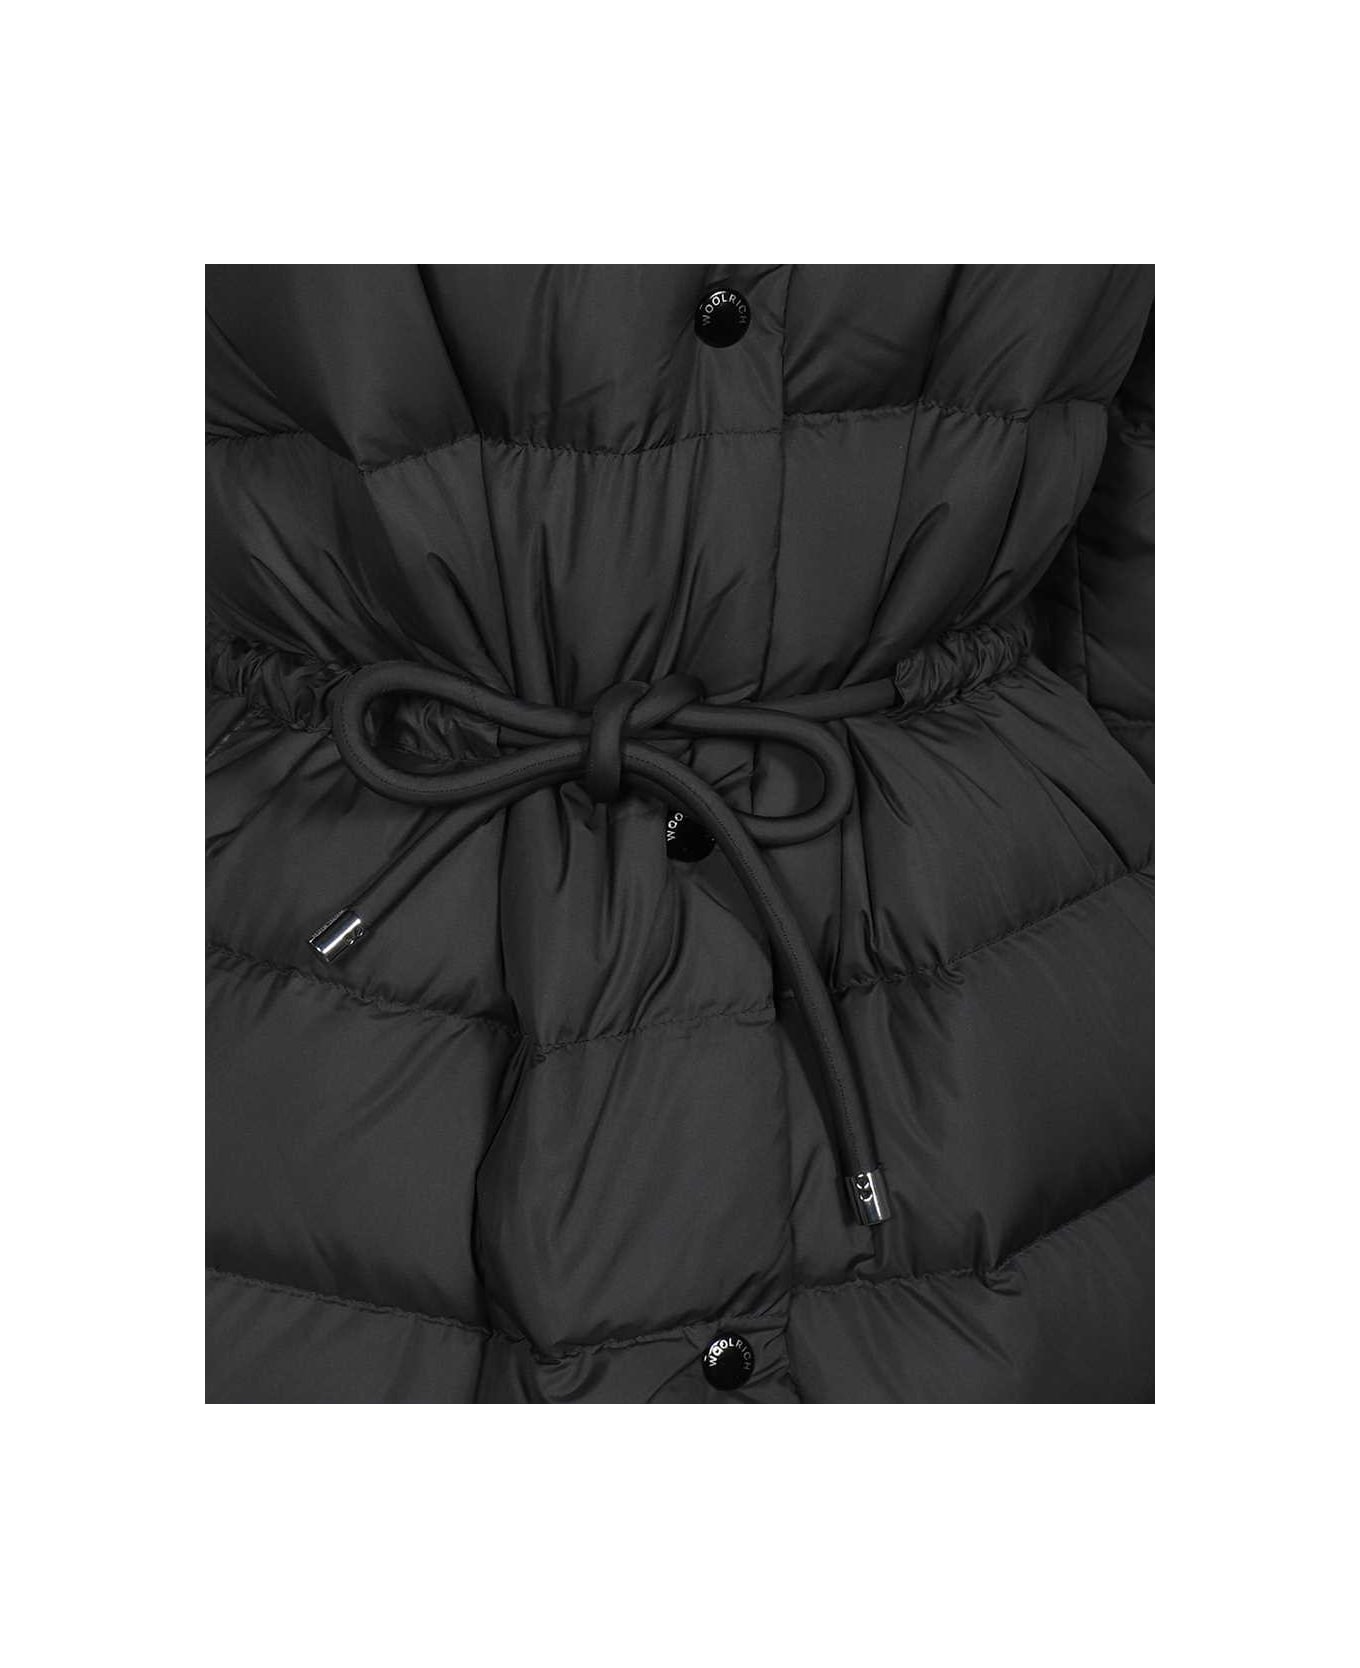 Woolrich Long Down Jacket - black コート